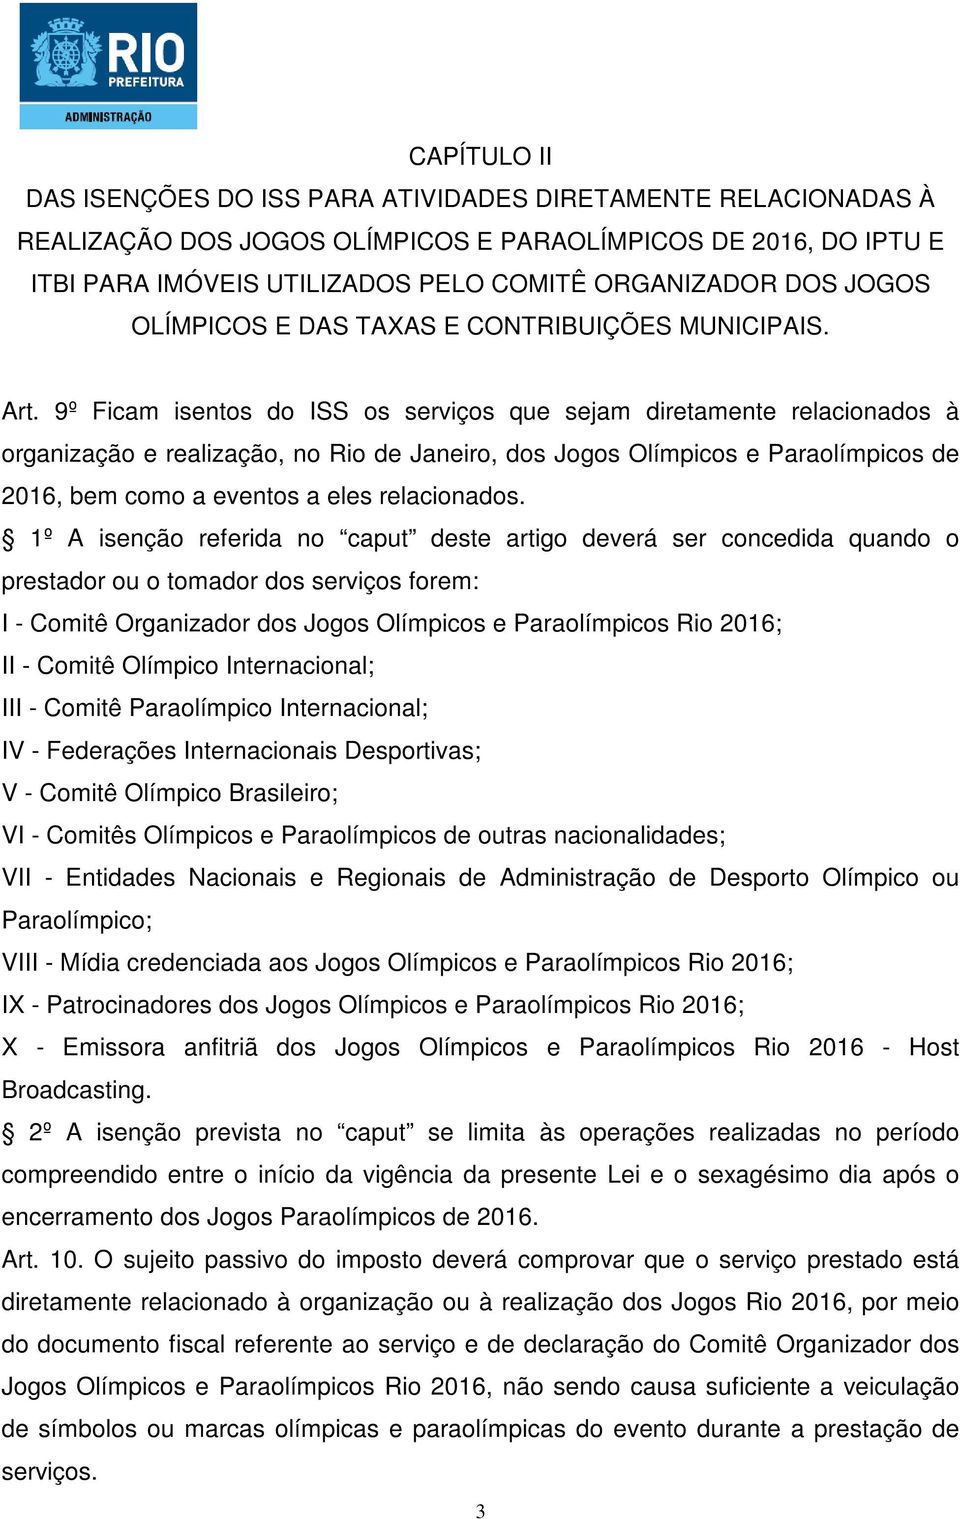 9º Ficam isentos do ISS os serviços que sejam diretamente relacionados à organização e realização, no Rio de Janeiro, dos Jogos Olímpicos e Paraolímpicos de 2016, bem como a eventos a eles